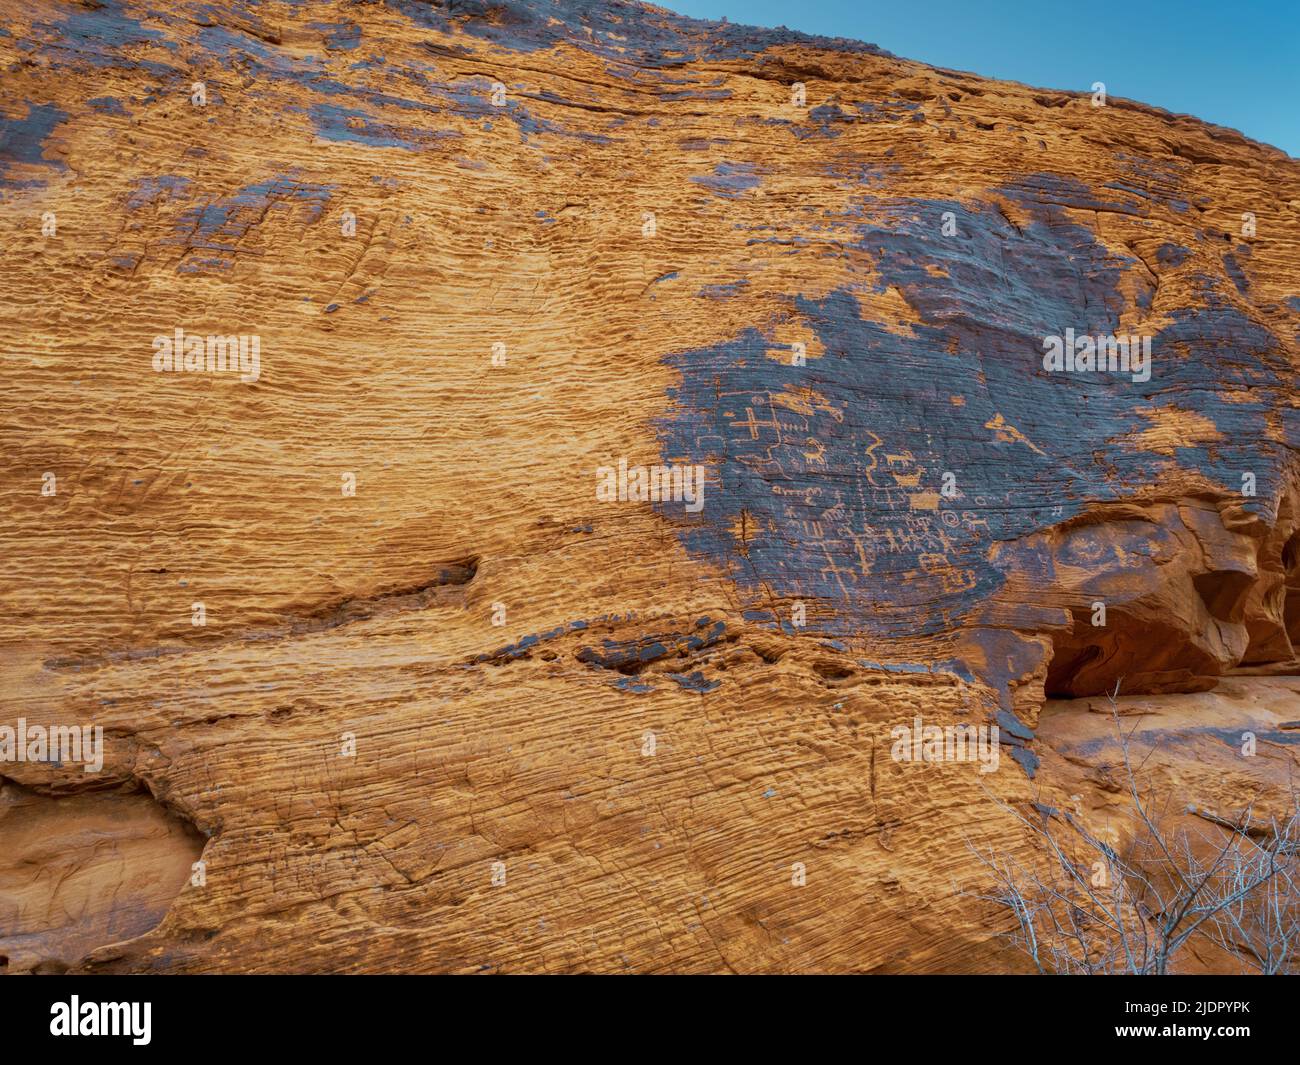 Les pétroglyphes sculptés à travers le vernis du désert, de sorte que la roche rouge du grès aztèque traverse le parc national de la Vallée de feu, Nevada USA Banque D'Images